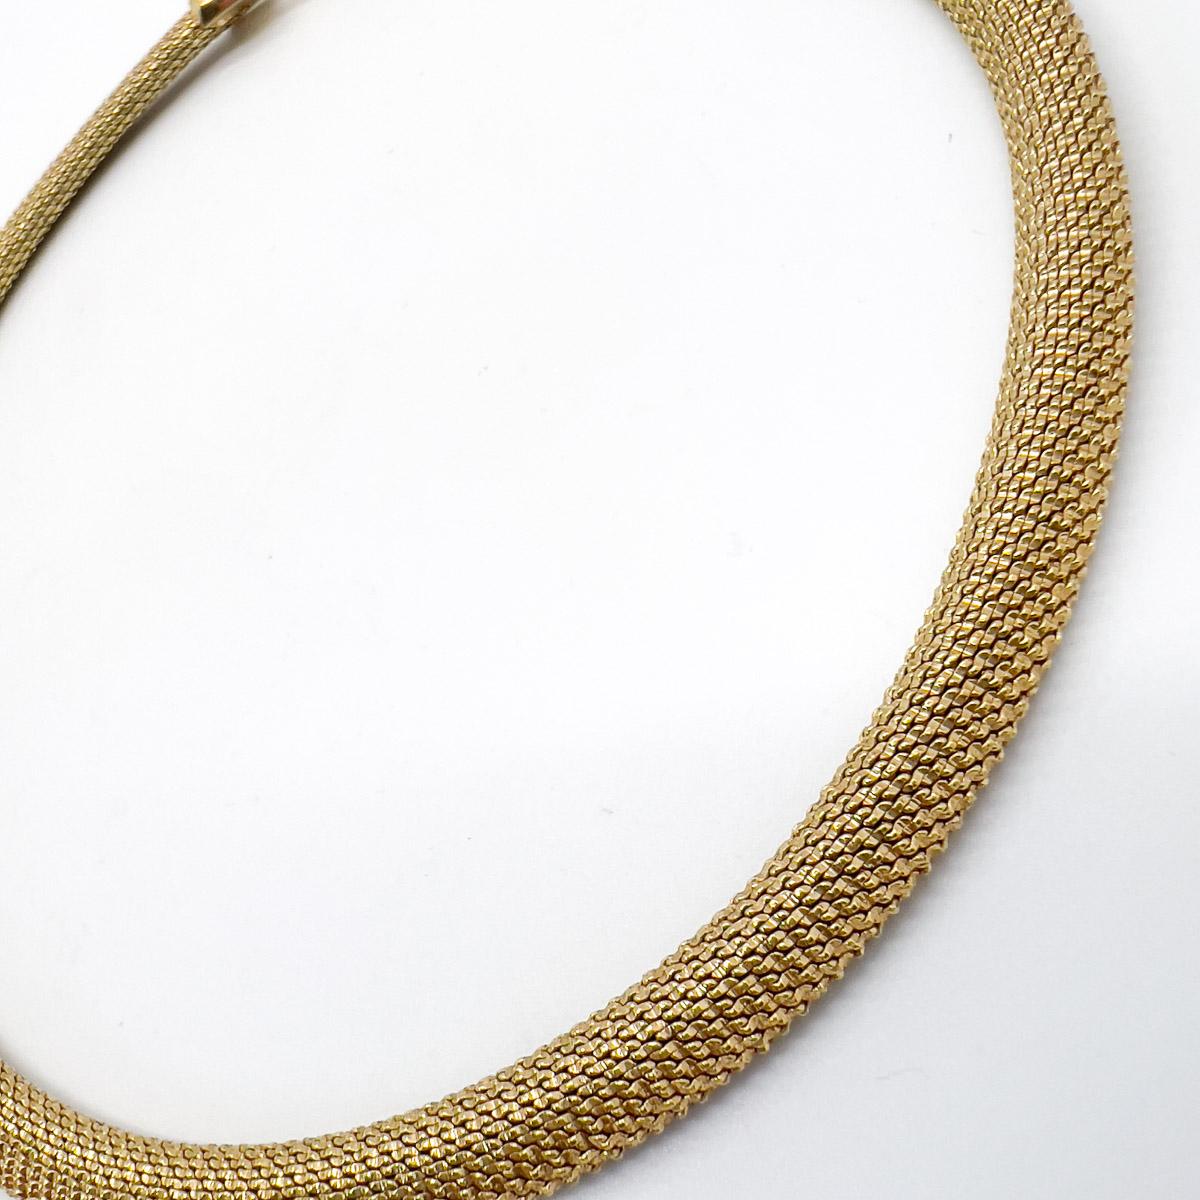 Un collier en maille Vintage Christian Dior sublimement intemporel. La maille dorée et la simplicité du design en font une pièce absolument gagnante, seule ou associée à vos autres favoris. Un classique absolu issu des archives de la Maison